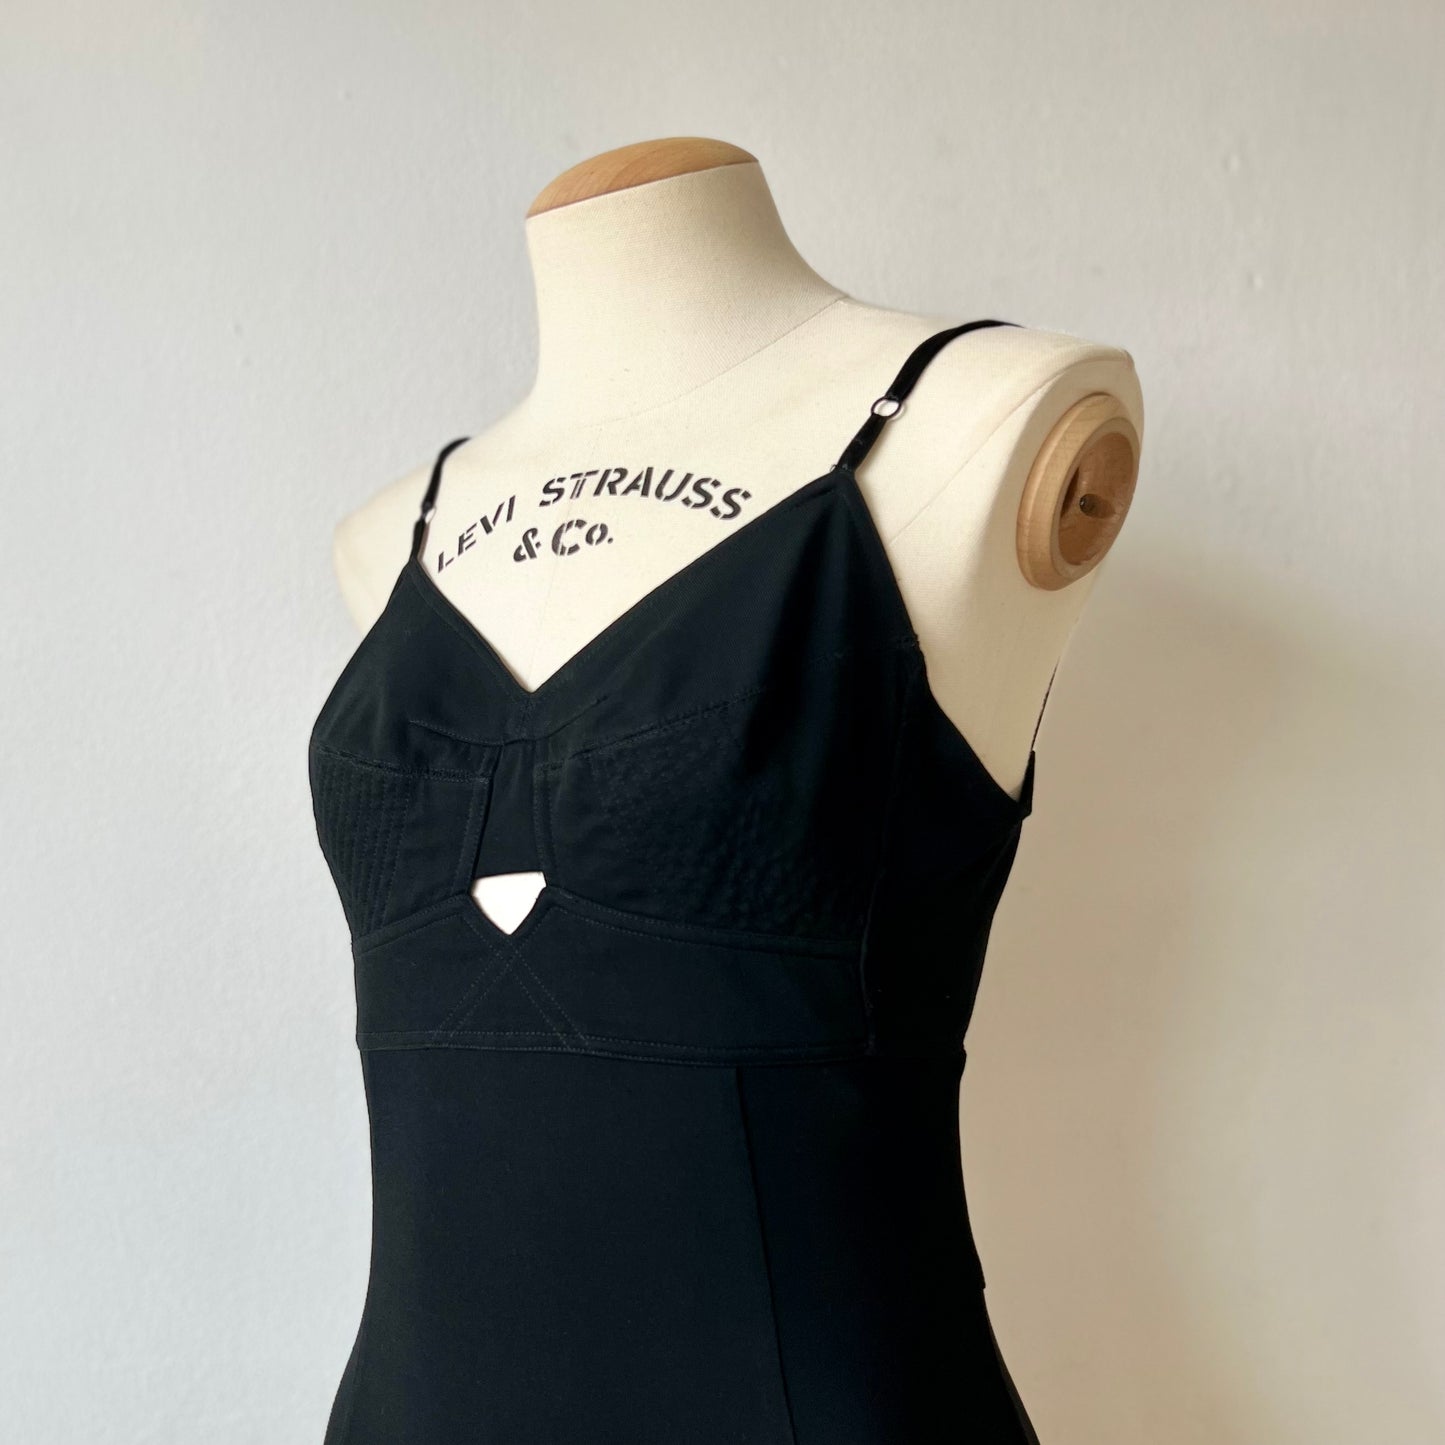 90s Dolce & Gabbana cut out bralette bodycon black dress